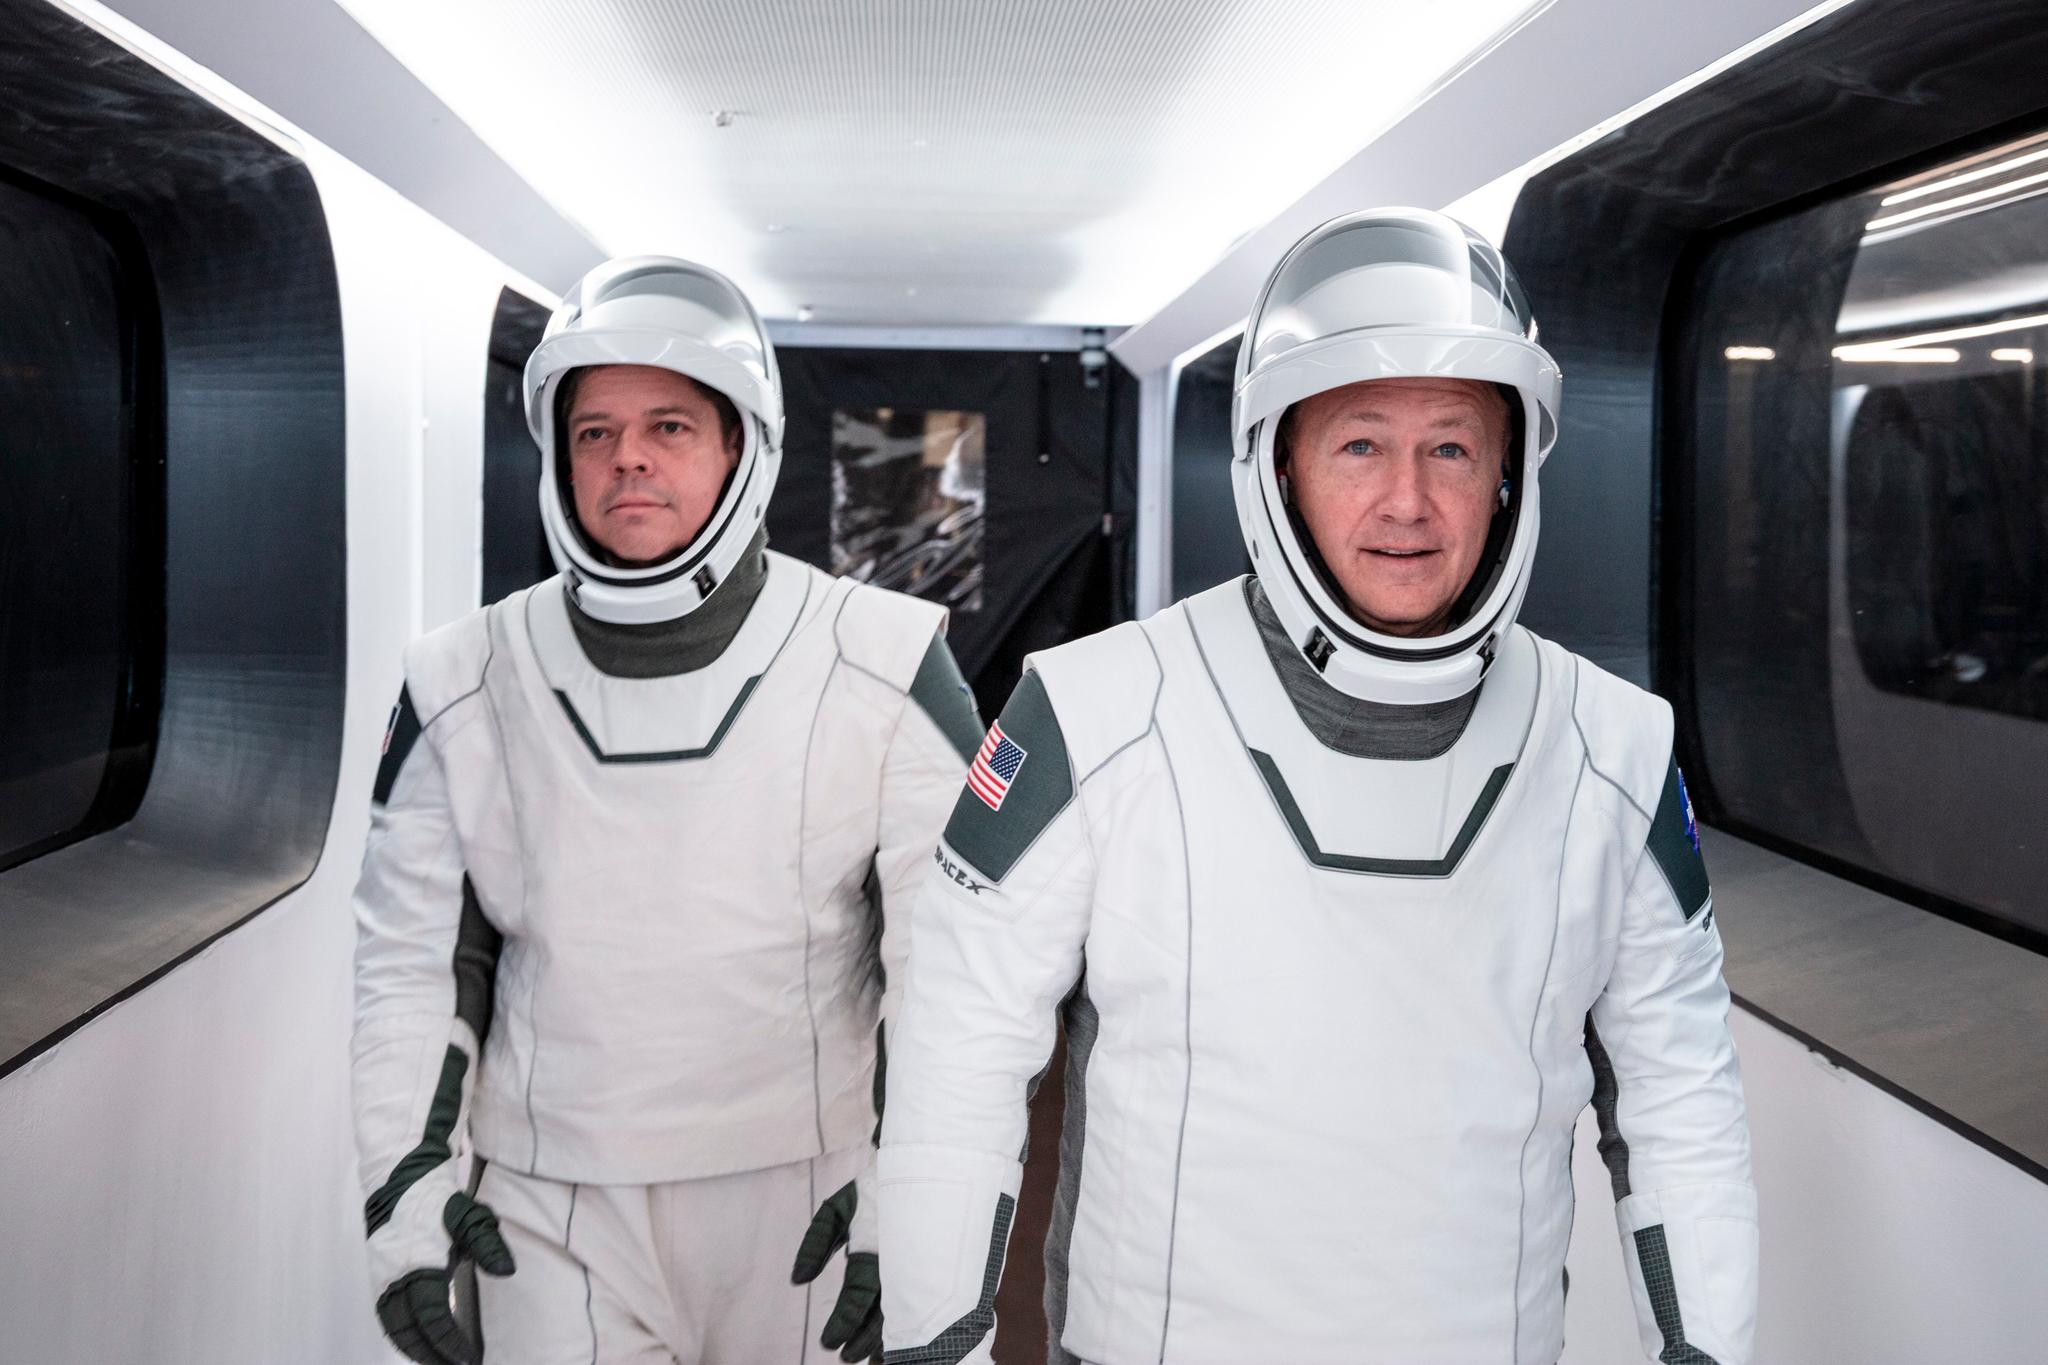 Astronauts and test pilots Doug Hurley and Bob Behnken